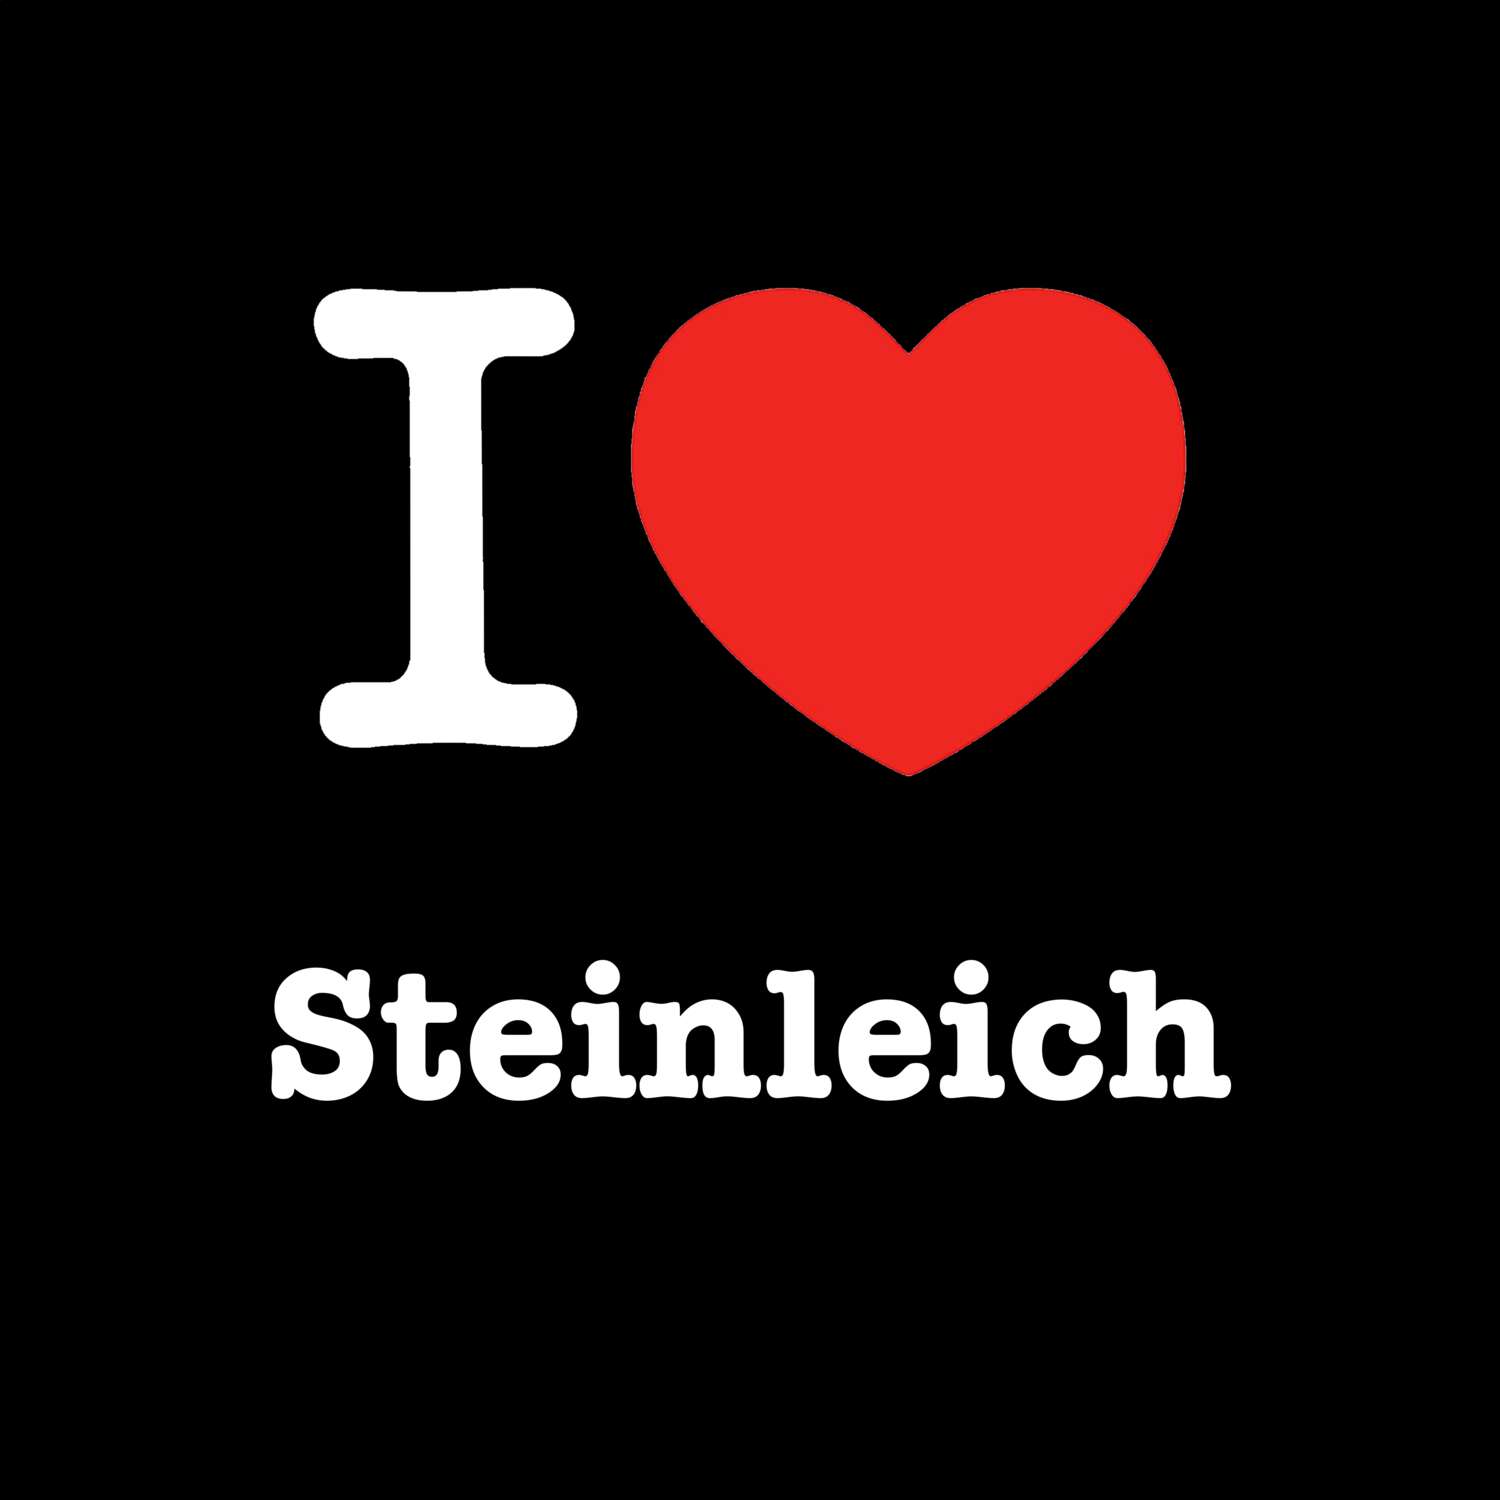 Steinleich T-Shirt »I love«